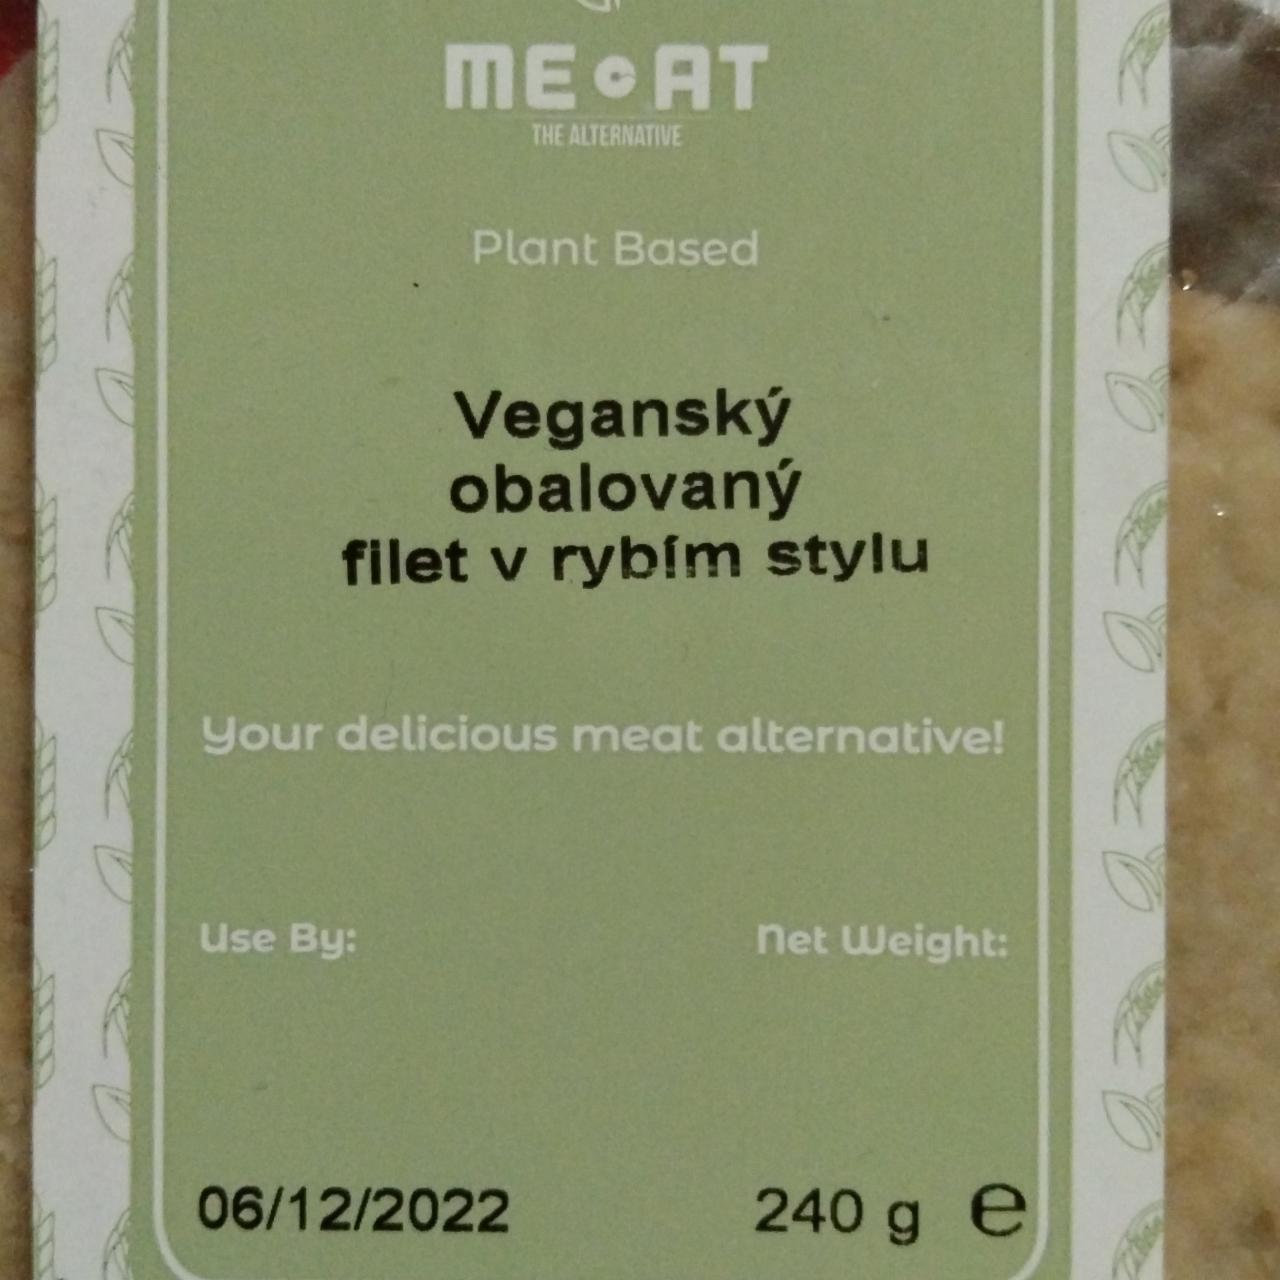 Fotografie - Veganský obalovaný filet v rybím stylu Meat